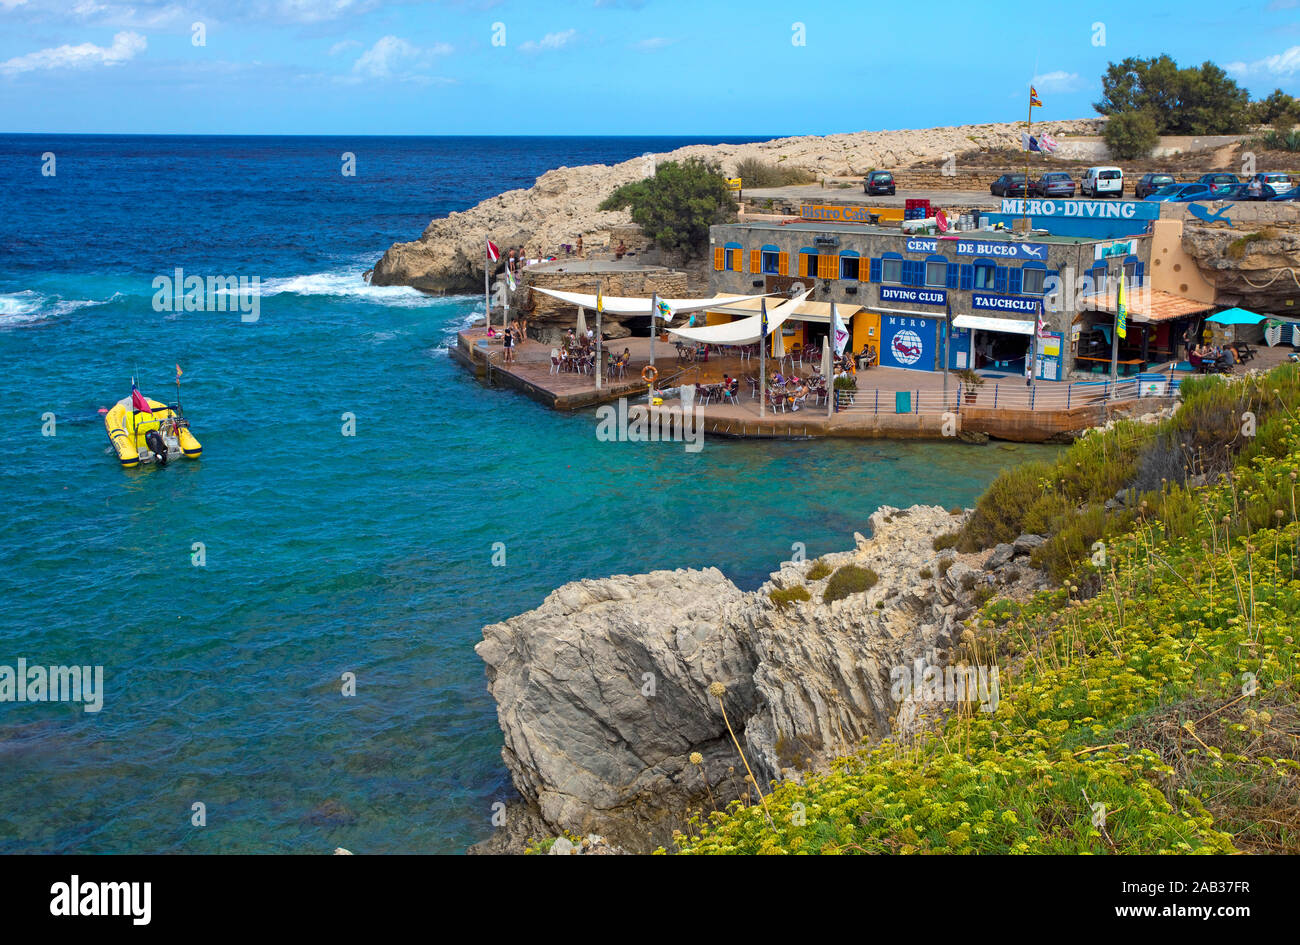 Tauchschule Mero Diving an der idyllischen Bucht Cala Lliteras, Cala Ratjada, Mallorca, Balearen, Spanien Stockfoto